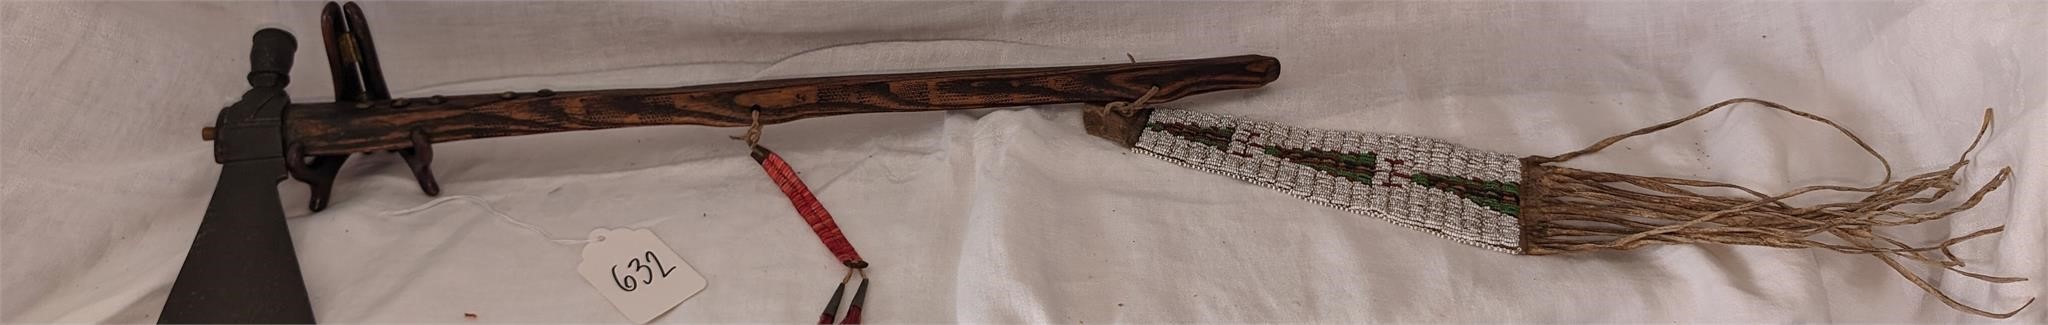 1700's-WW2 Guns Daggers Books Uniforms 5/29 & 5/30 Auctions